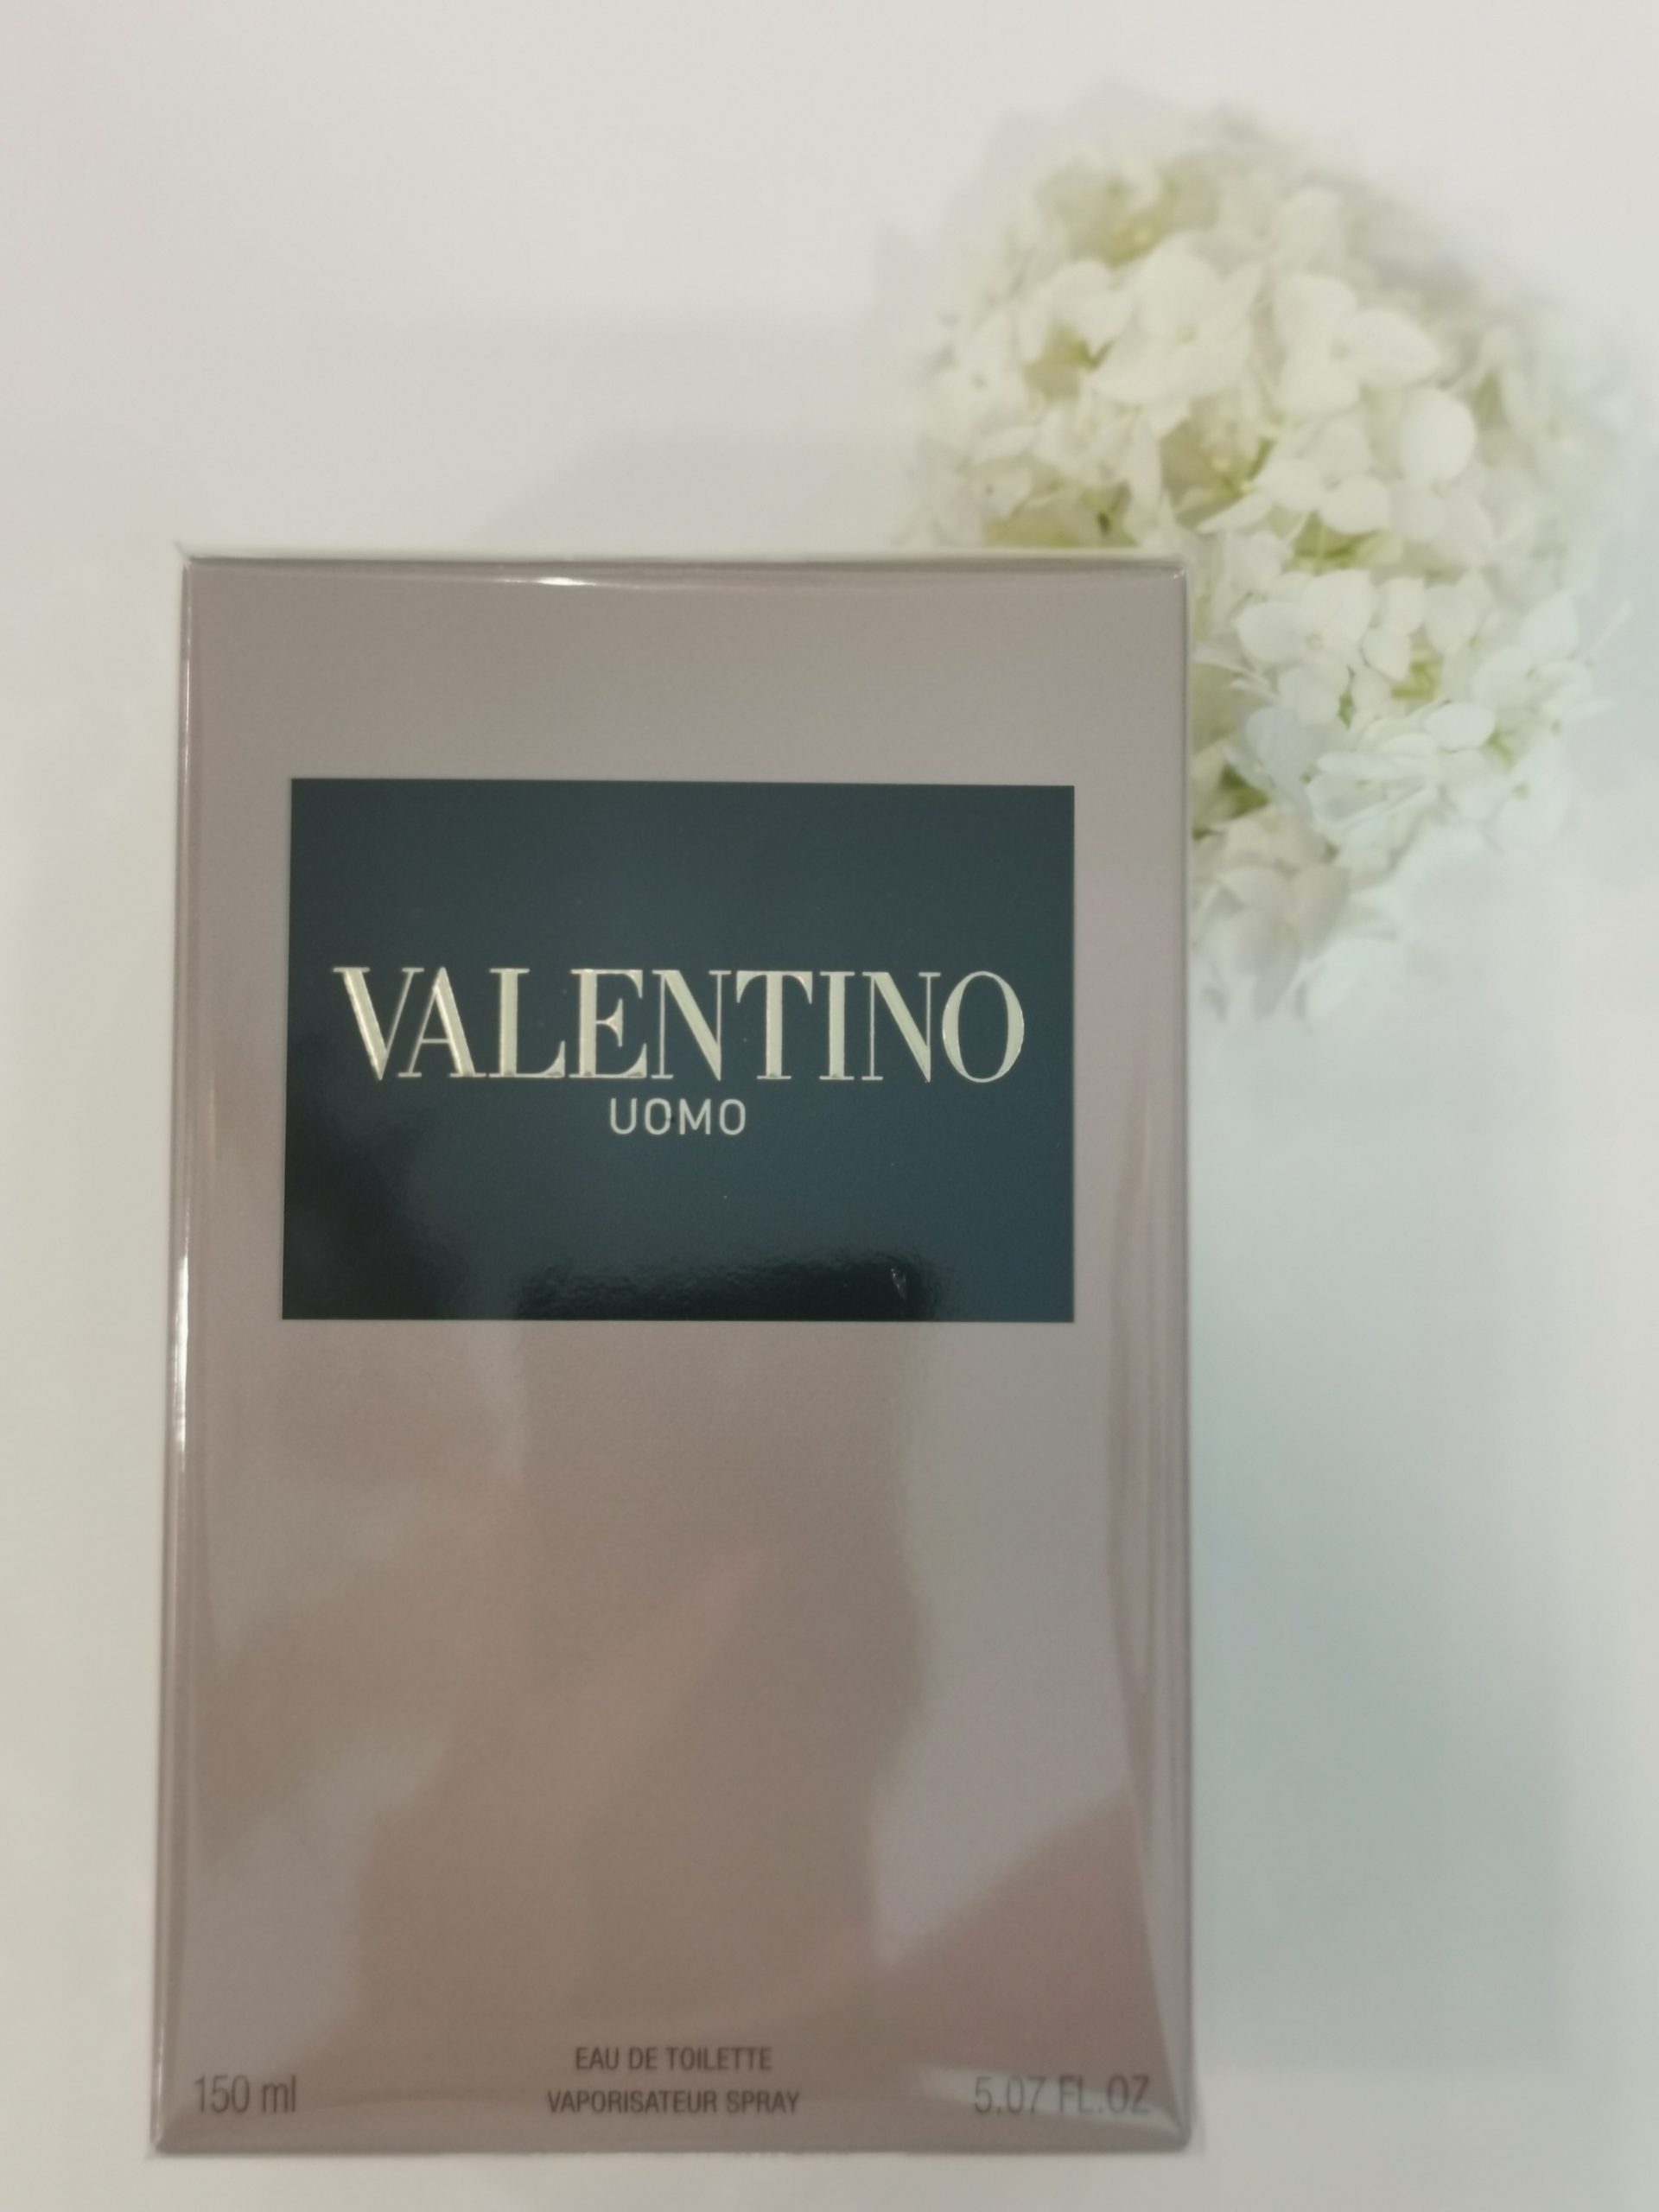 Valentino – Uomo 150ml EDT – Bellucci parfimerija